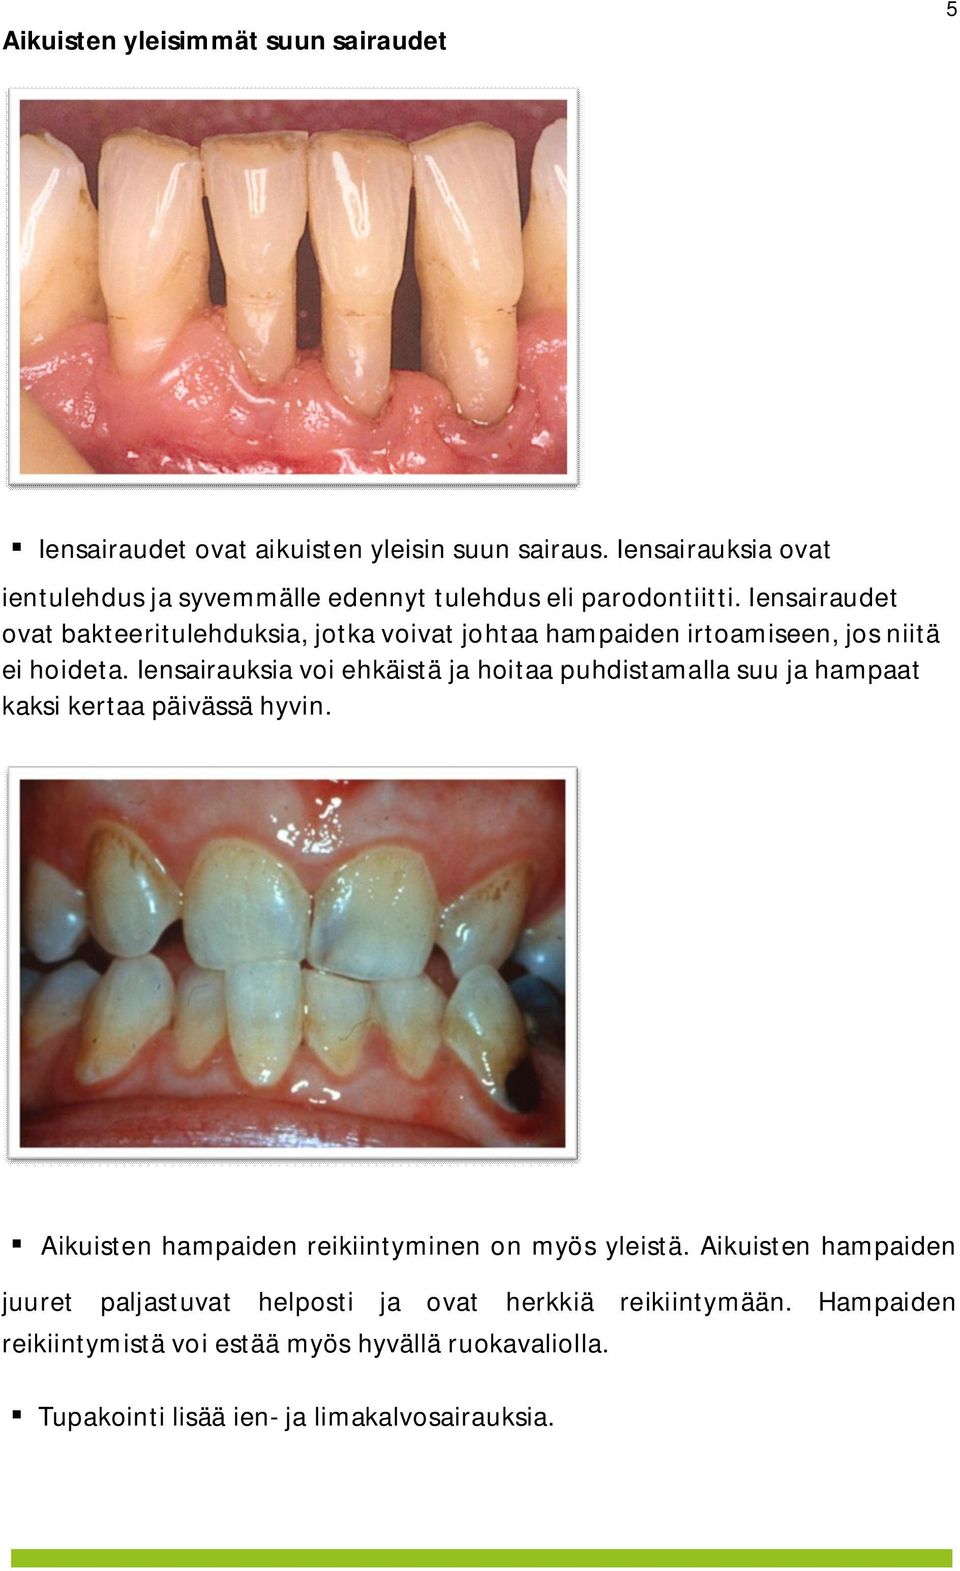 Iensairaudet ovat bakteeritulehduksia, jotka voivat johtaa hampaiden irtoamiseen, jos niitä ei hoideta.